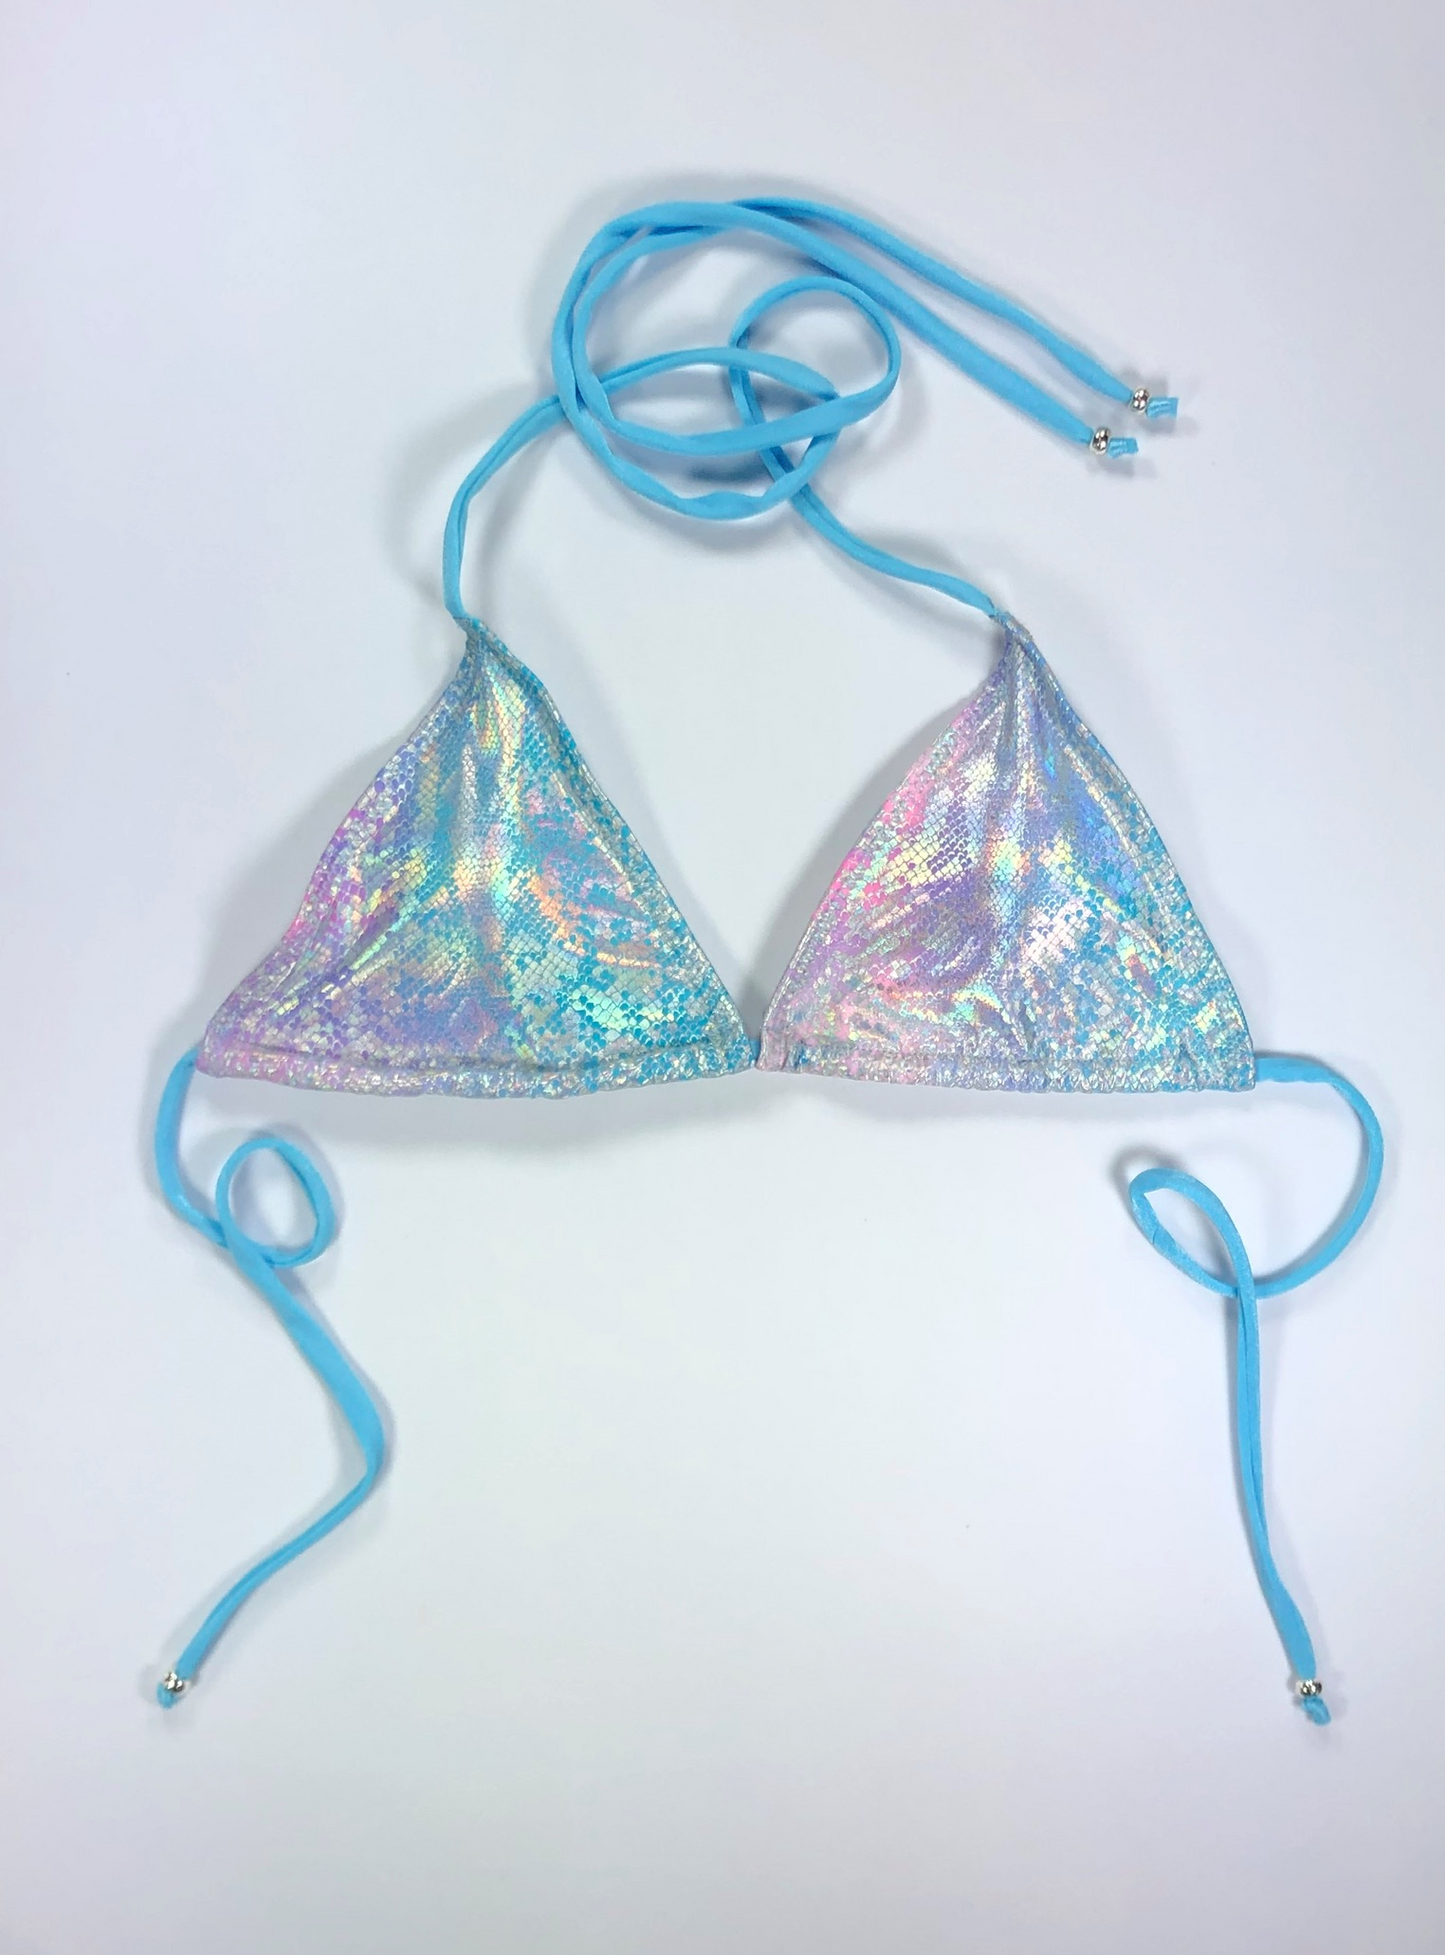 wendolin-designs - Wendolin Designs - Bikini Top - Triangular Bikini Top - Color Holographic Design